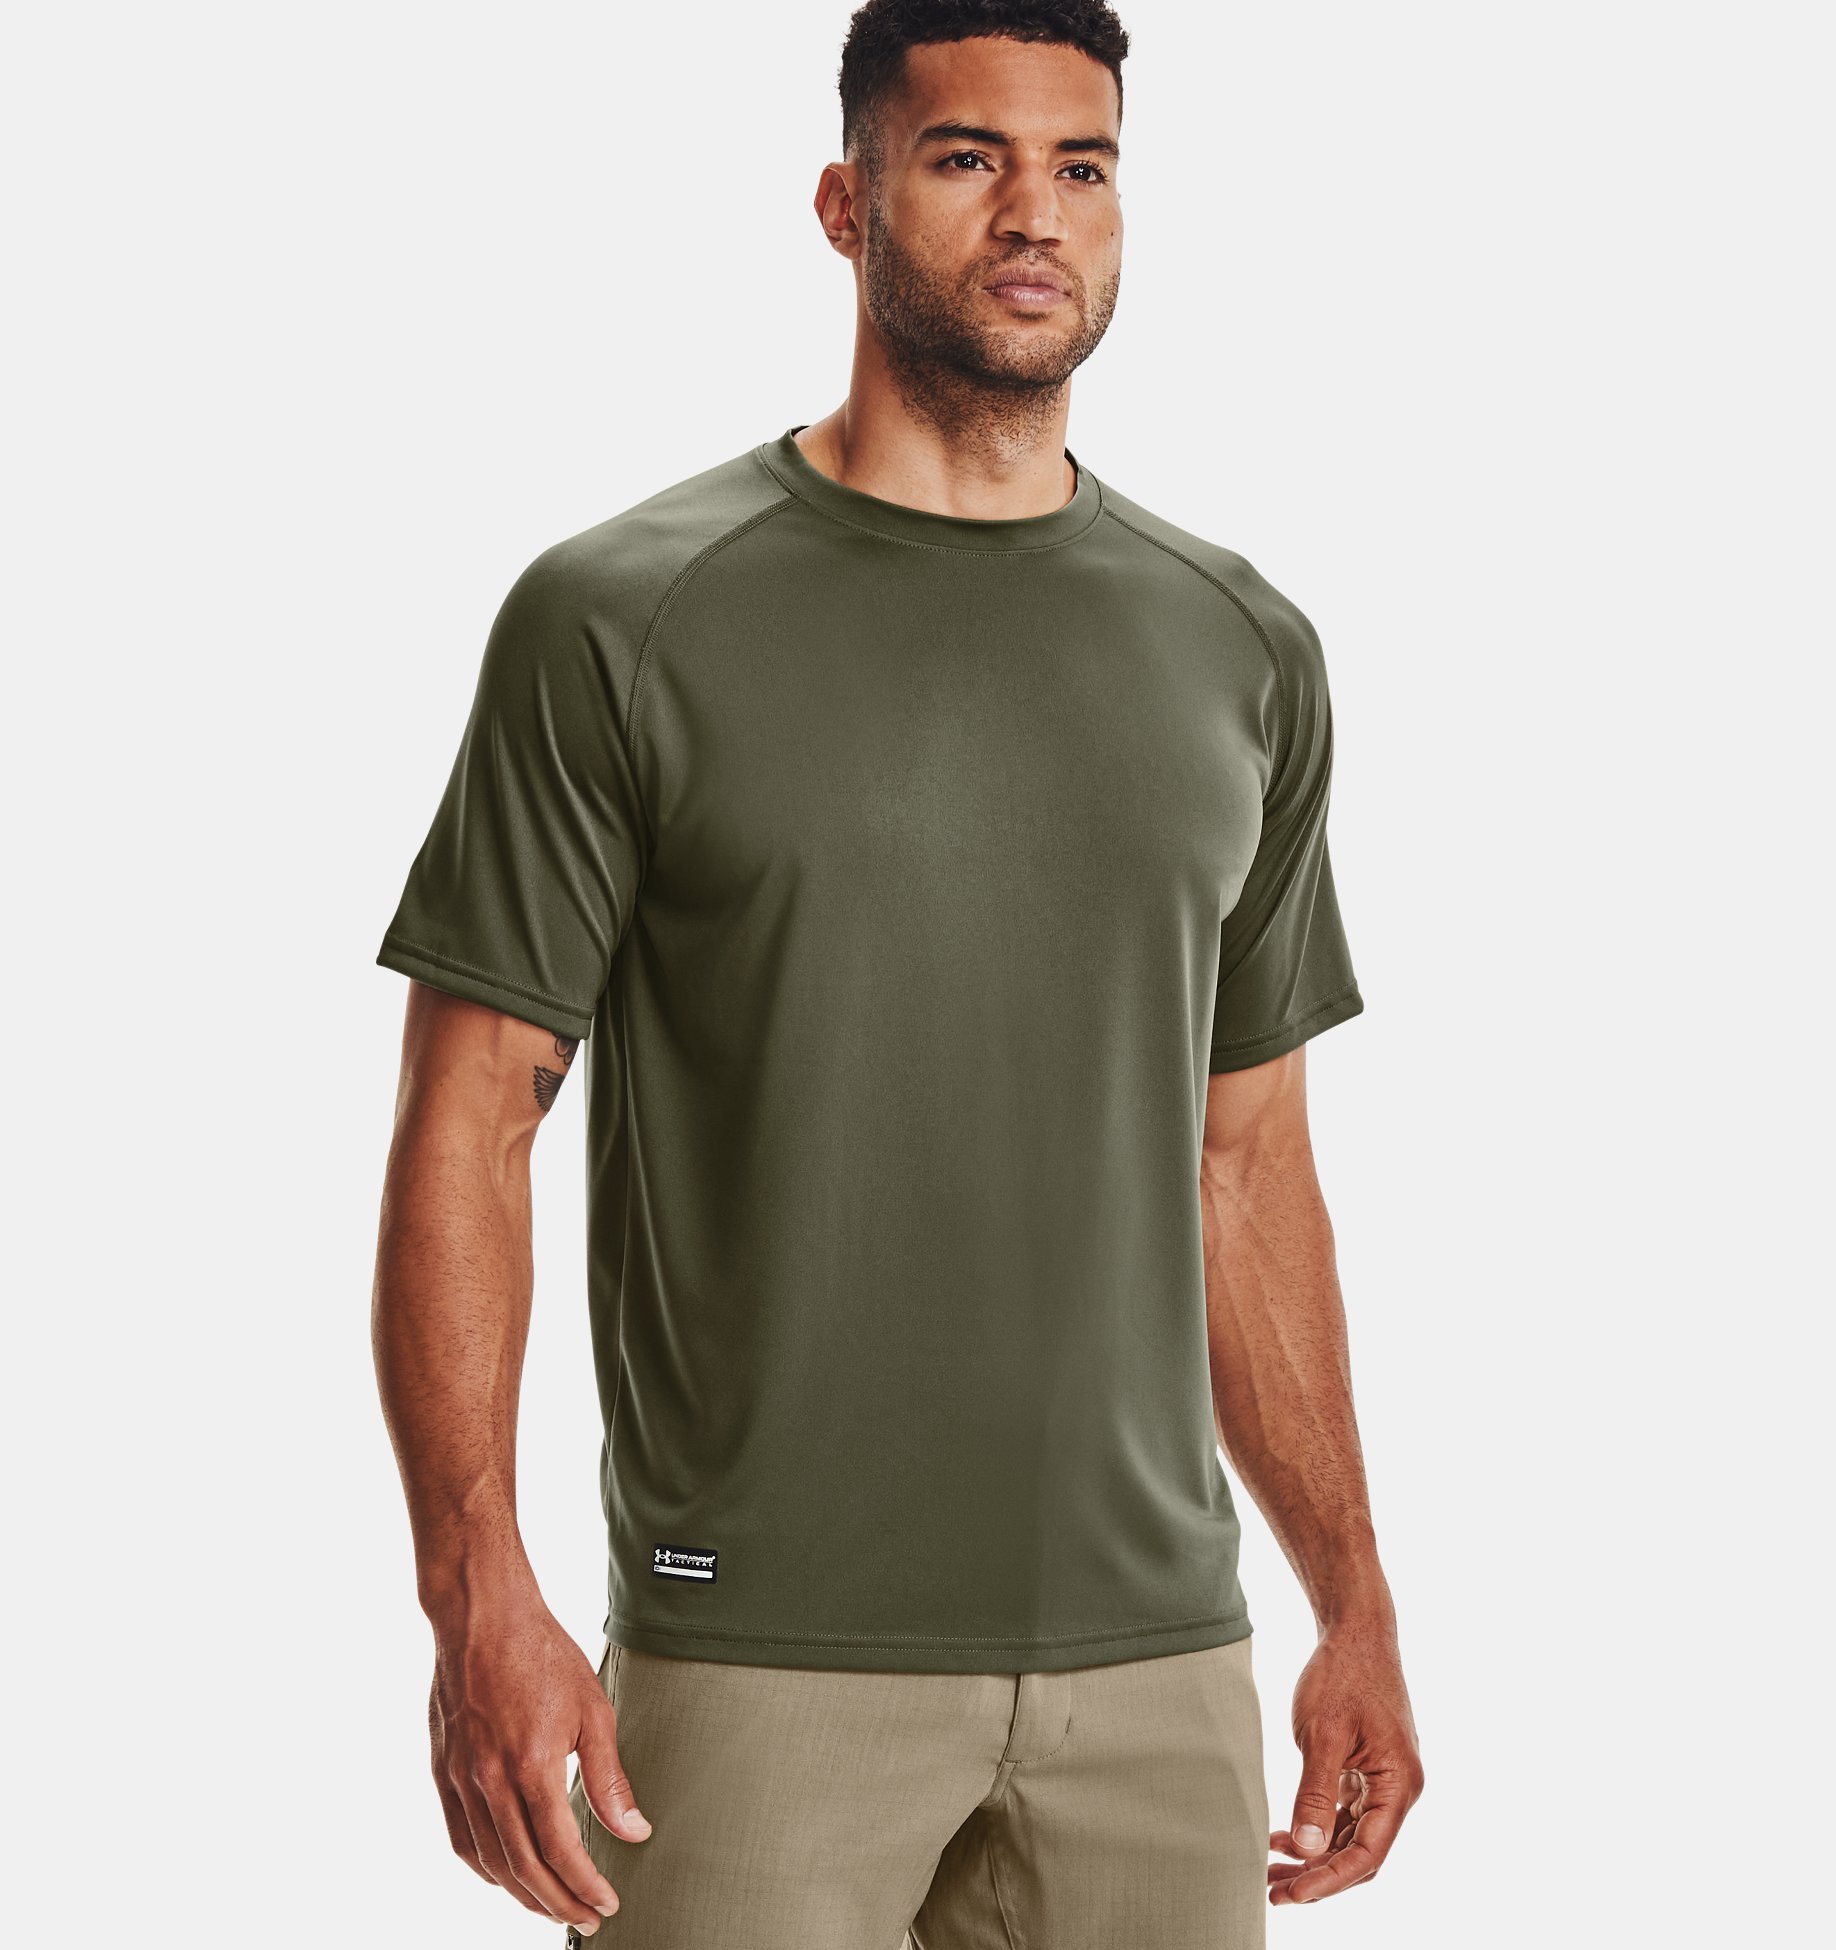 Under Armour Mens Tech Short Sleeve T-Shirt